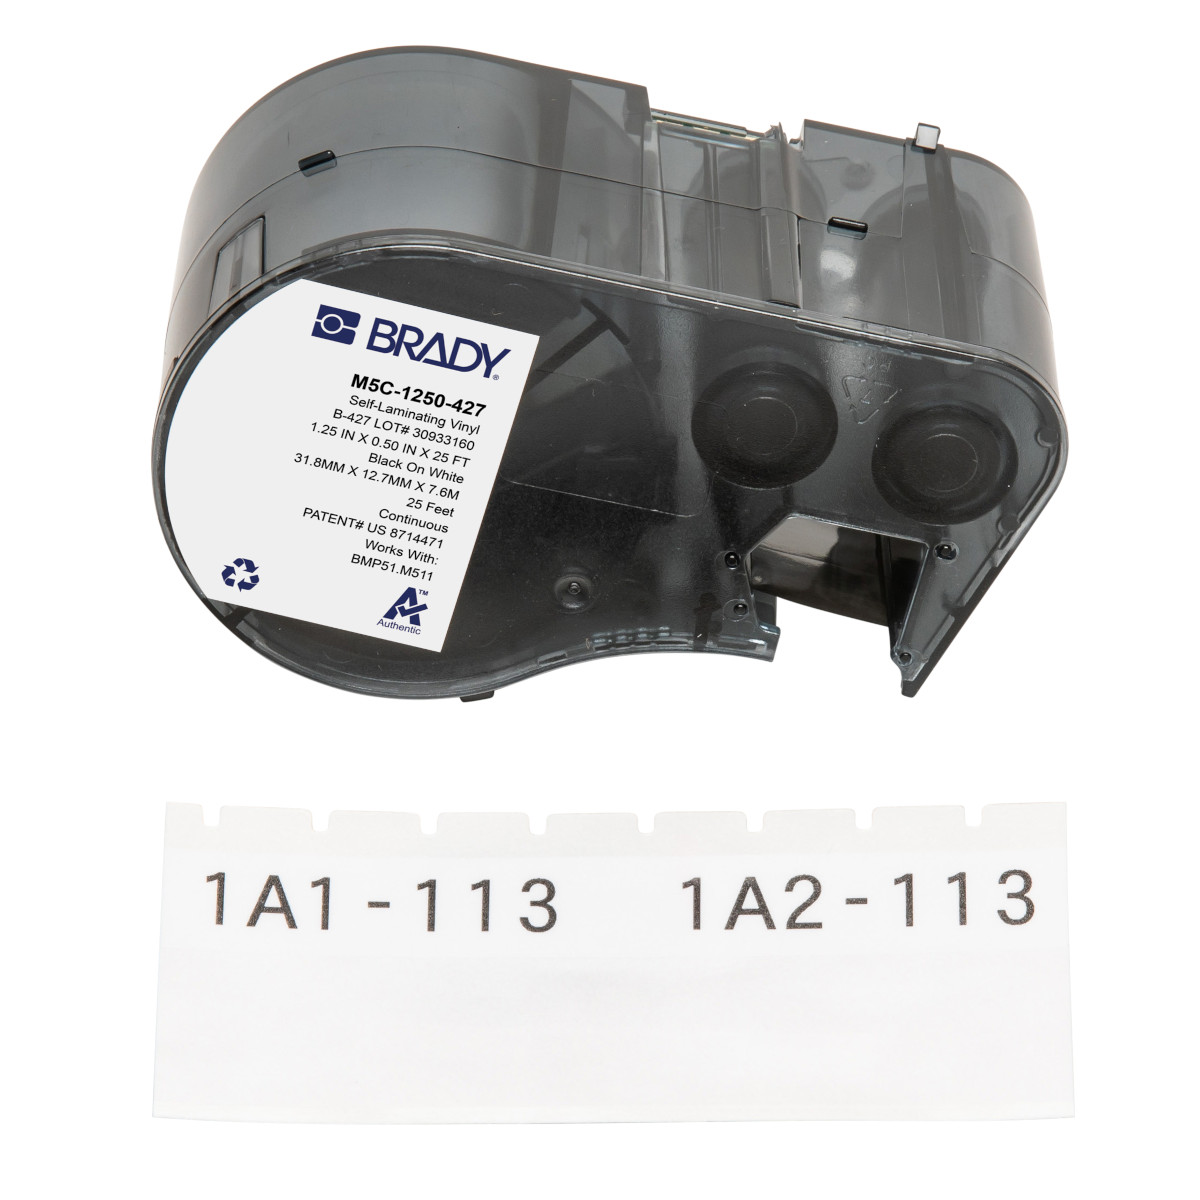 Étiquettes en vinyle auto-protégées pour fils et câbles pour étiqueteuses BMP51 et M511